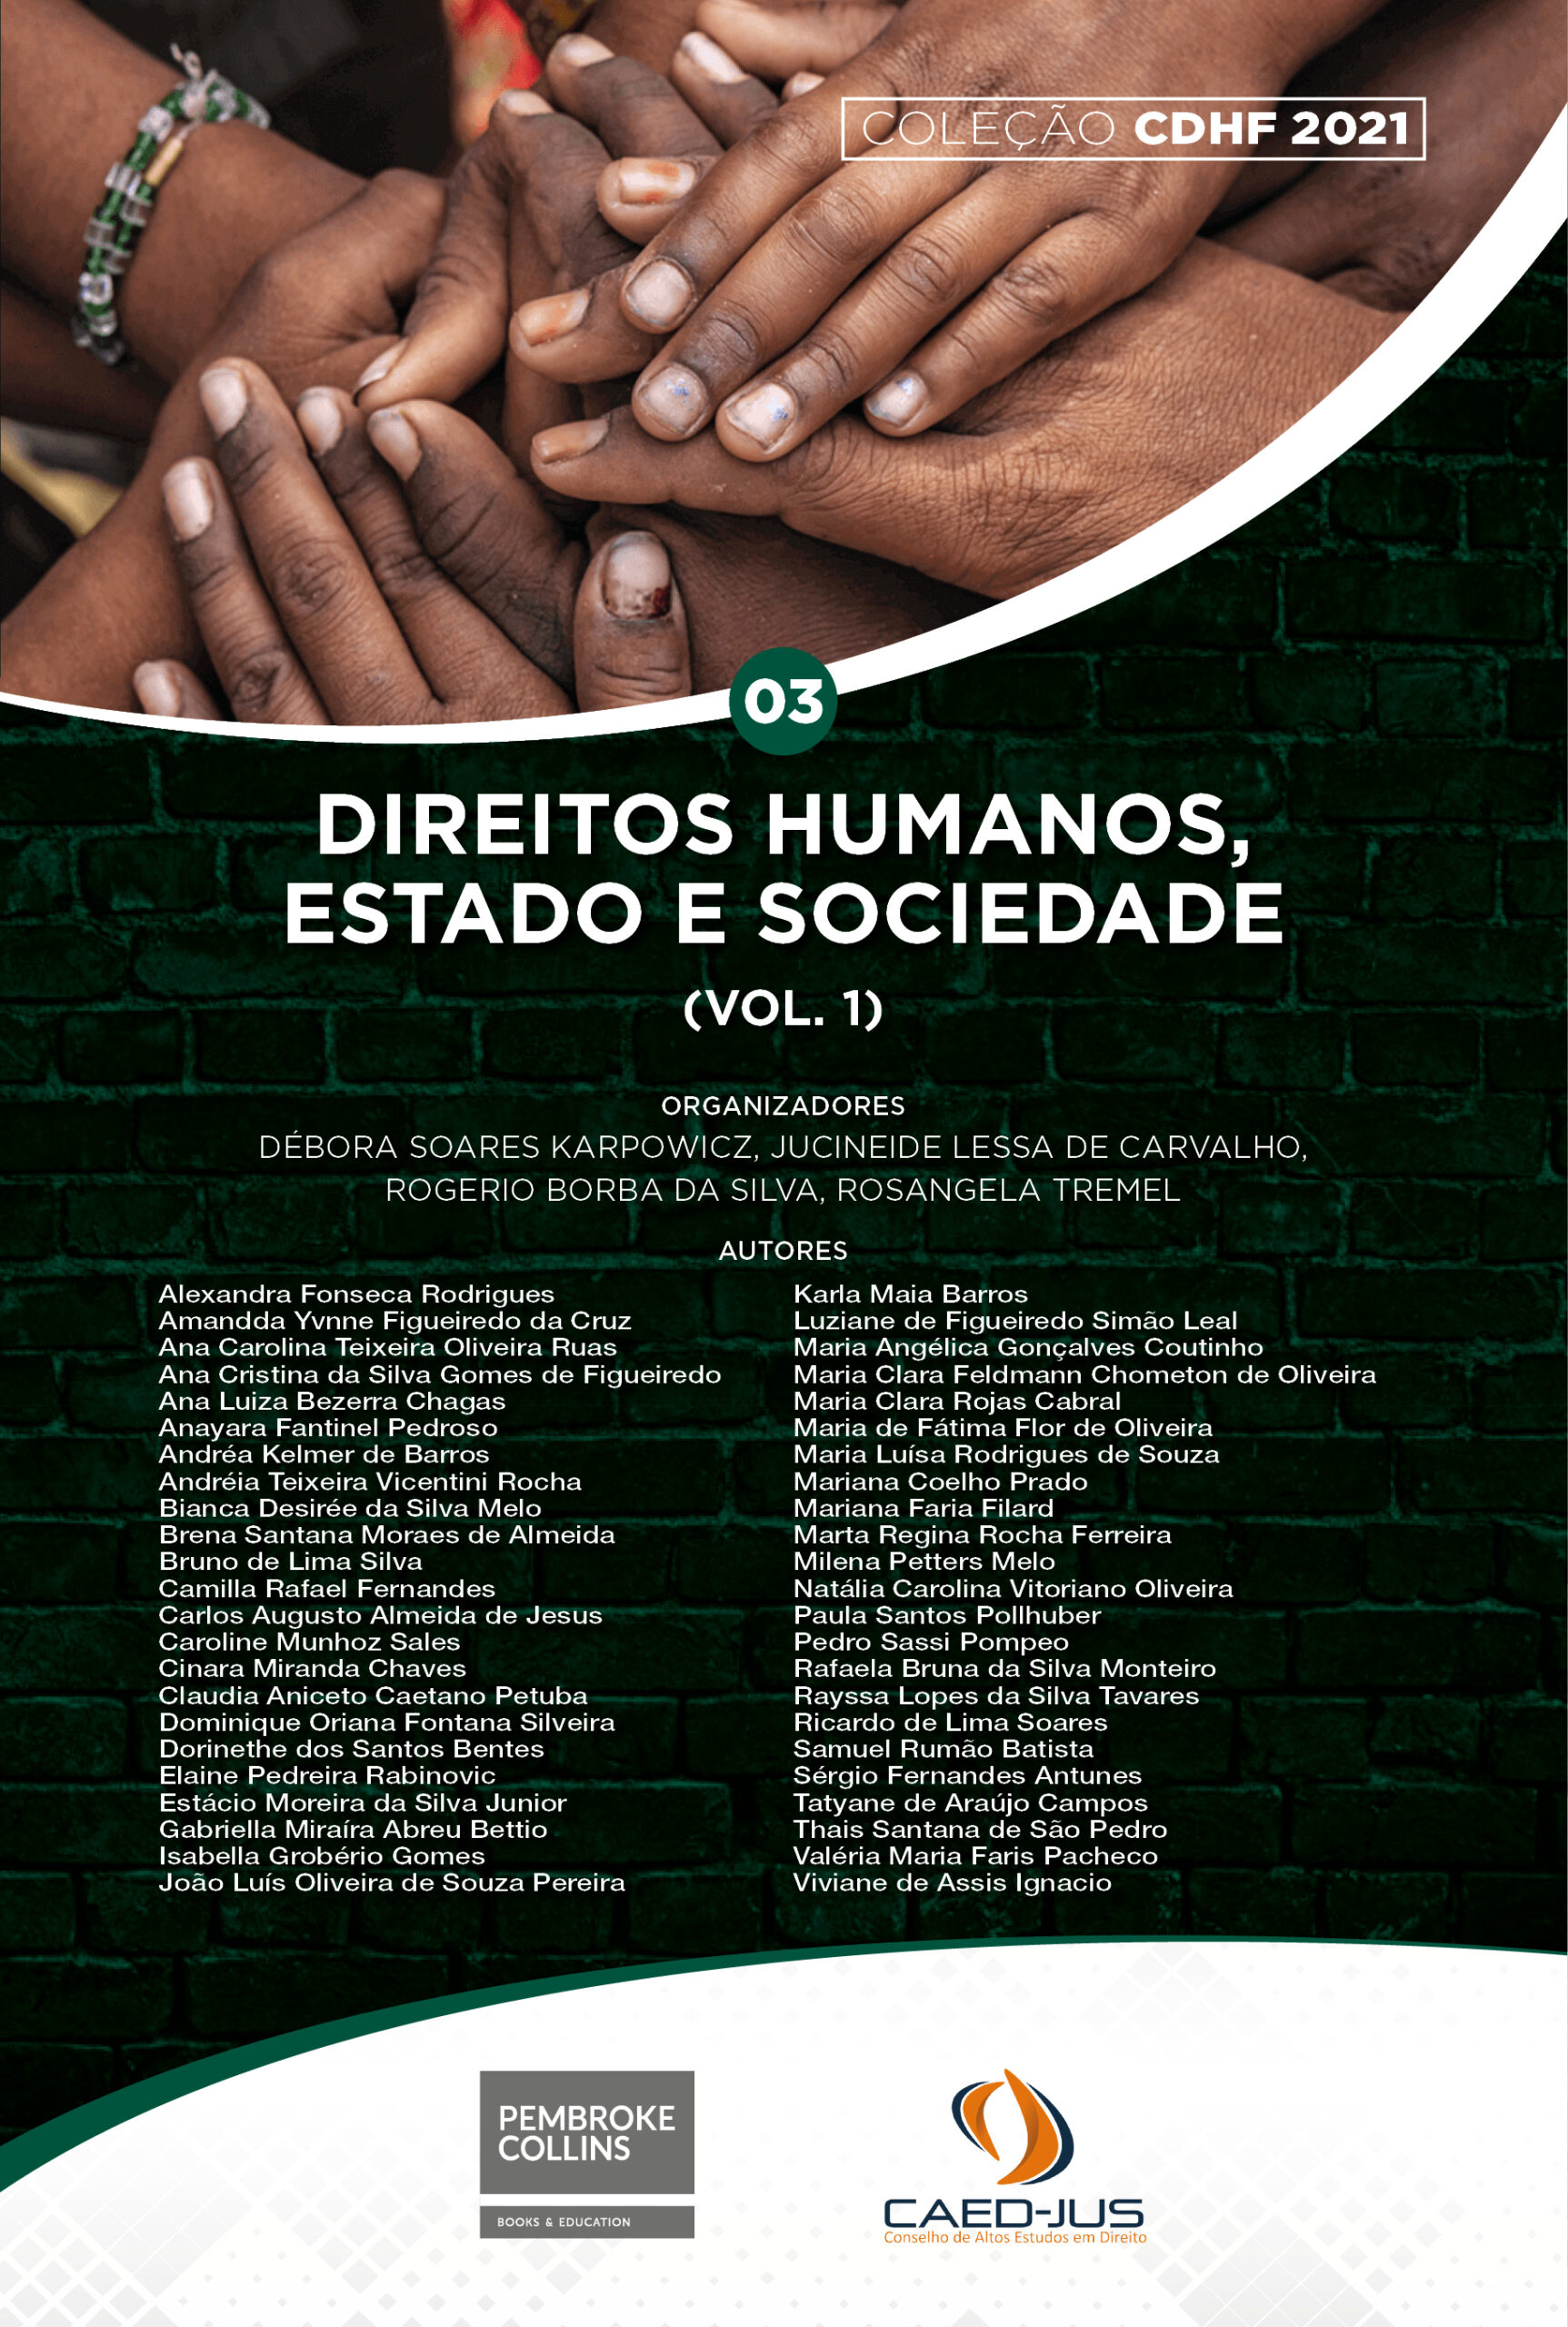 CDHF2021-03-Direitos-humanos-estado-e-sociedade-vol1